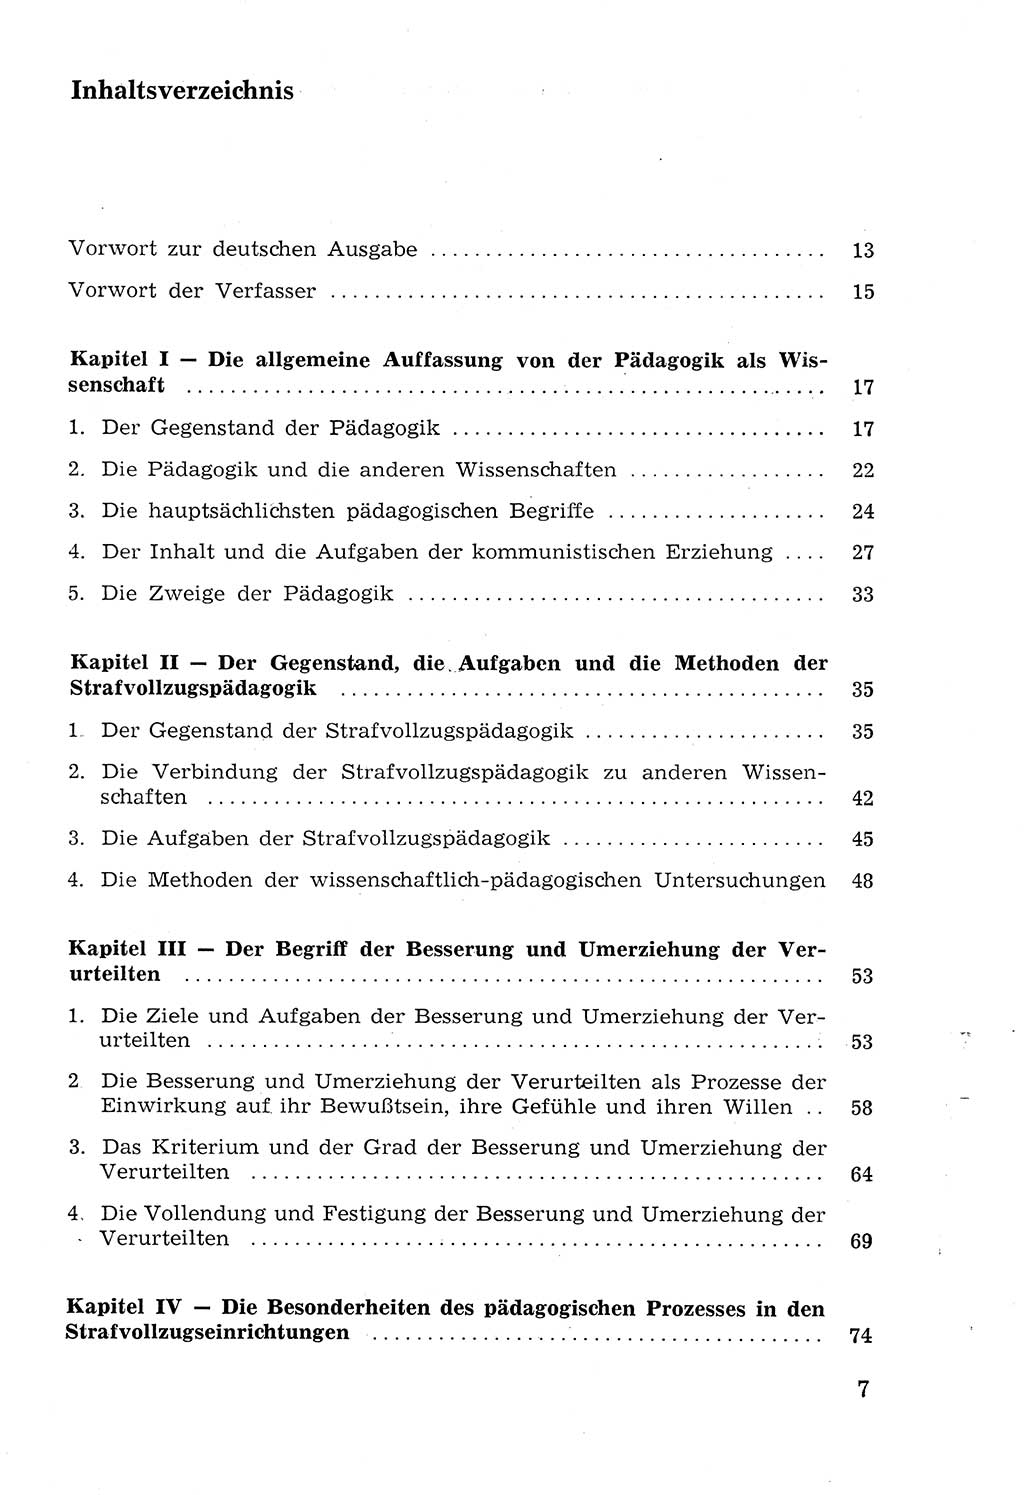 Lehrbuch der Strafvollzugspädagogik [Deutsche Demokratische Republik (DDR)] 1969, Seite 7 (Lb. SV-Pd. DDR 1969, S. 7)